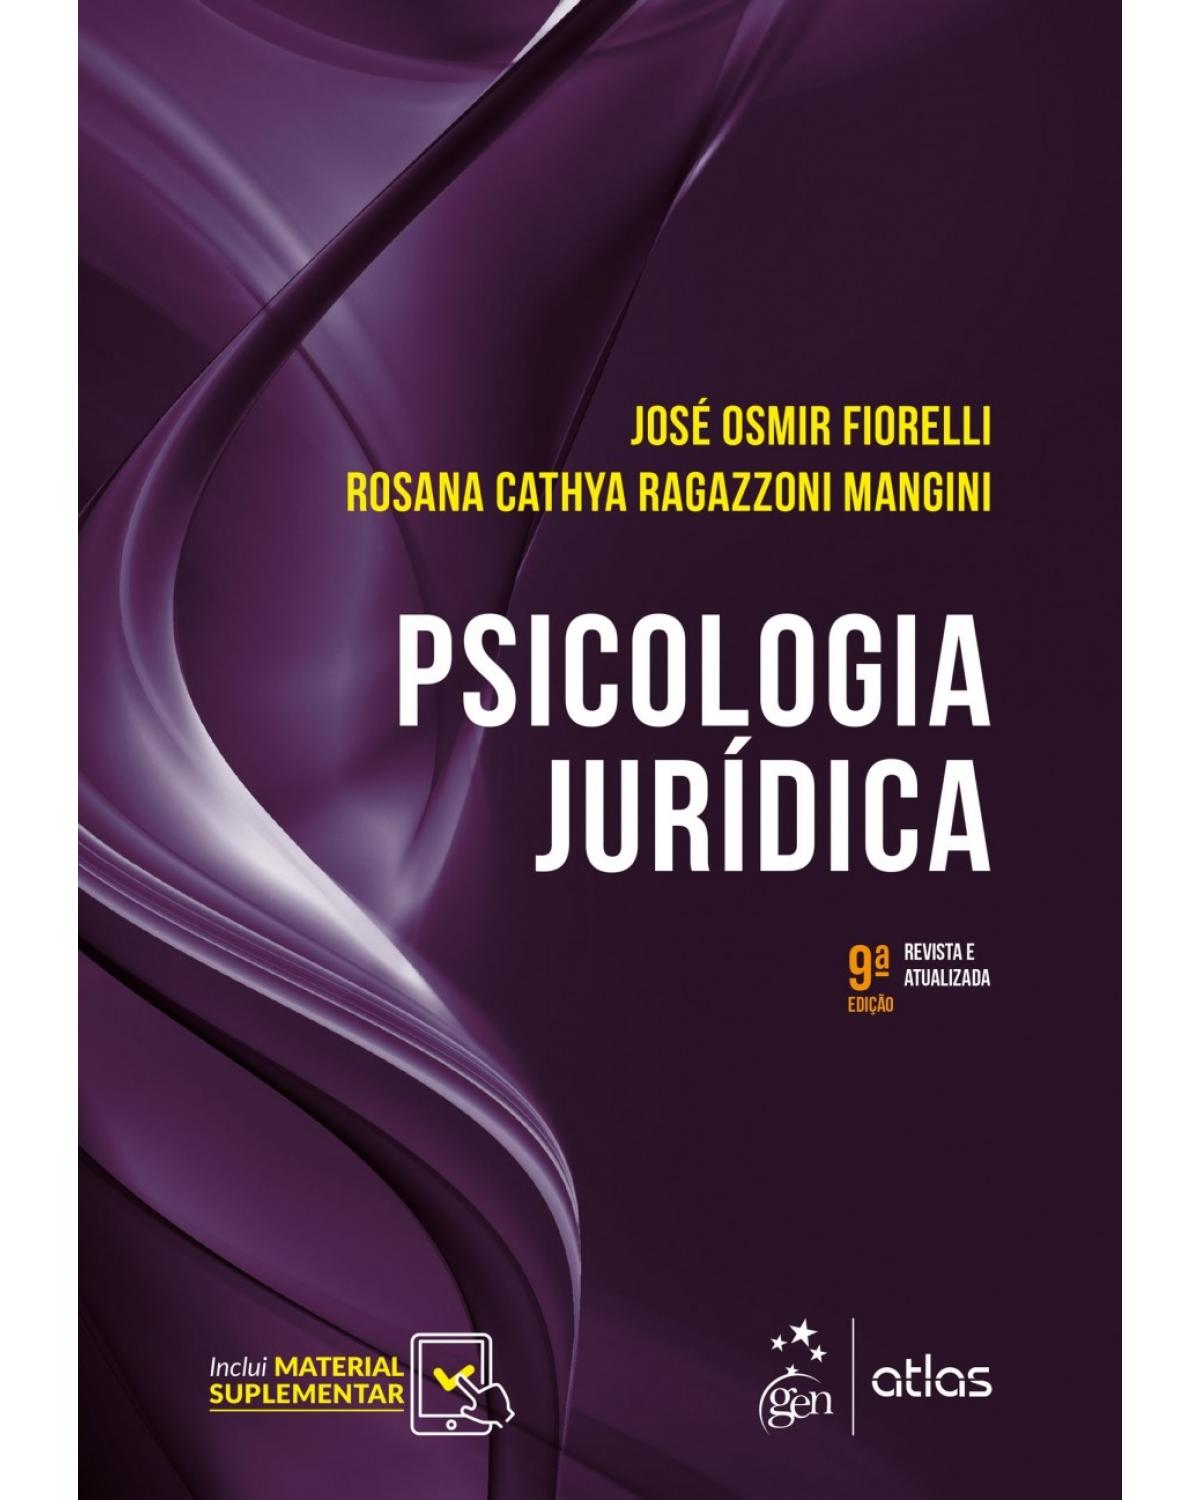 Psicologia jurídica - 9ª Edição | 2018